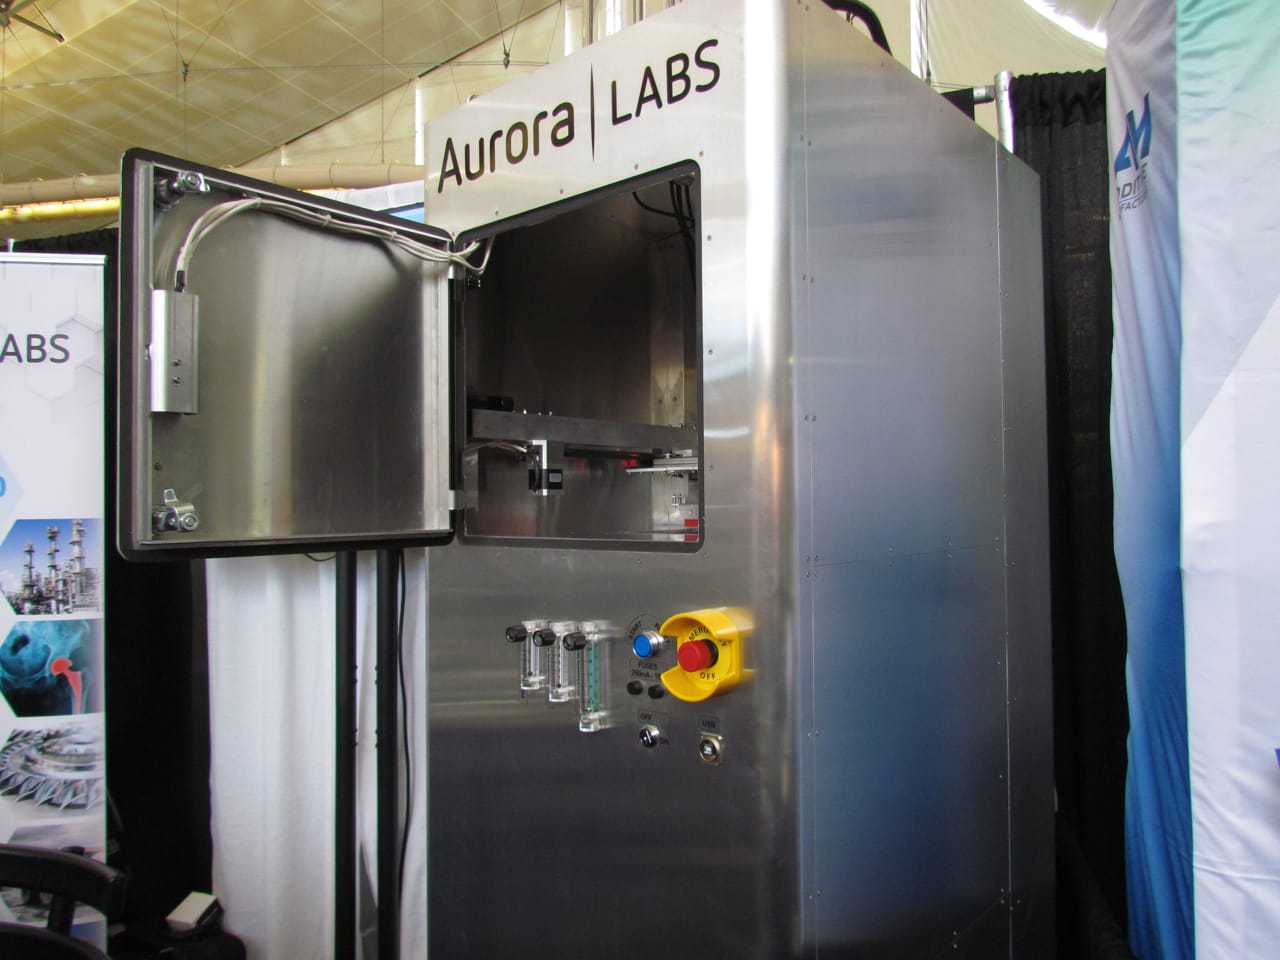  Aurora Labs' initial 3D metal printer 